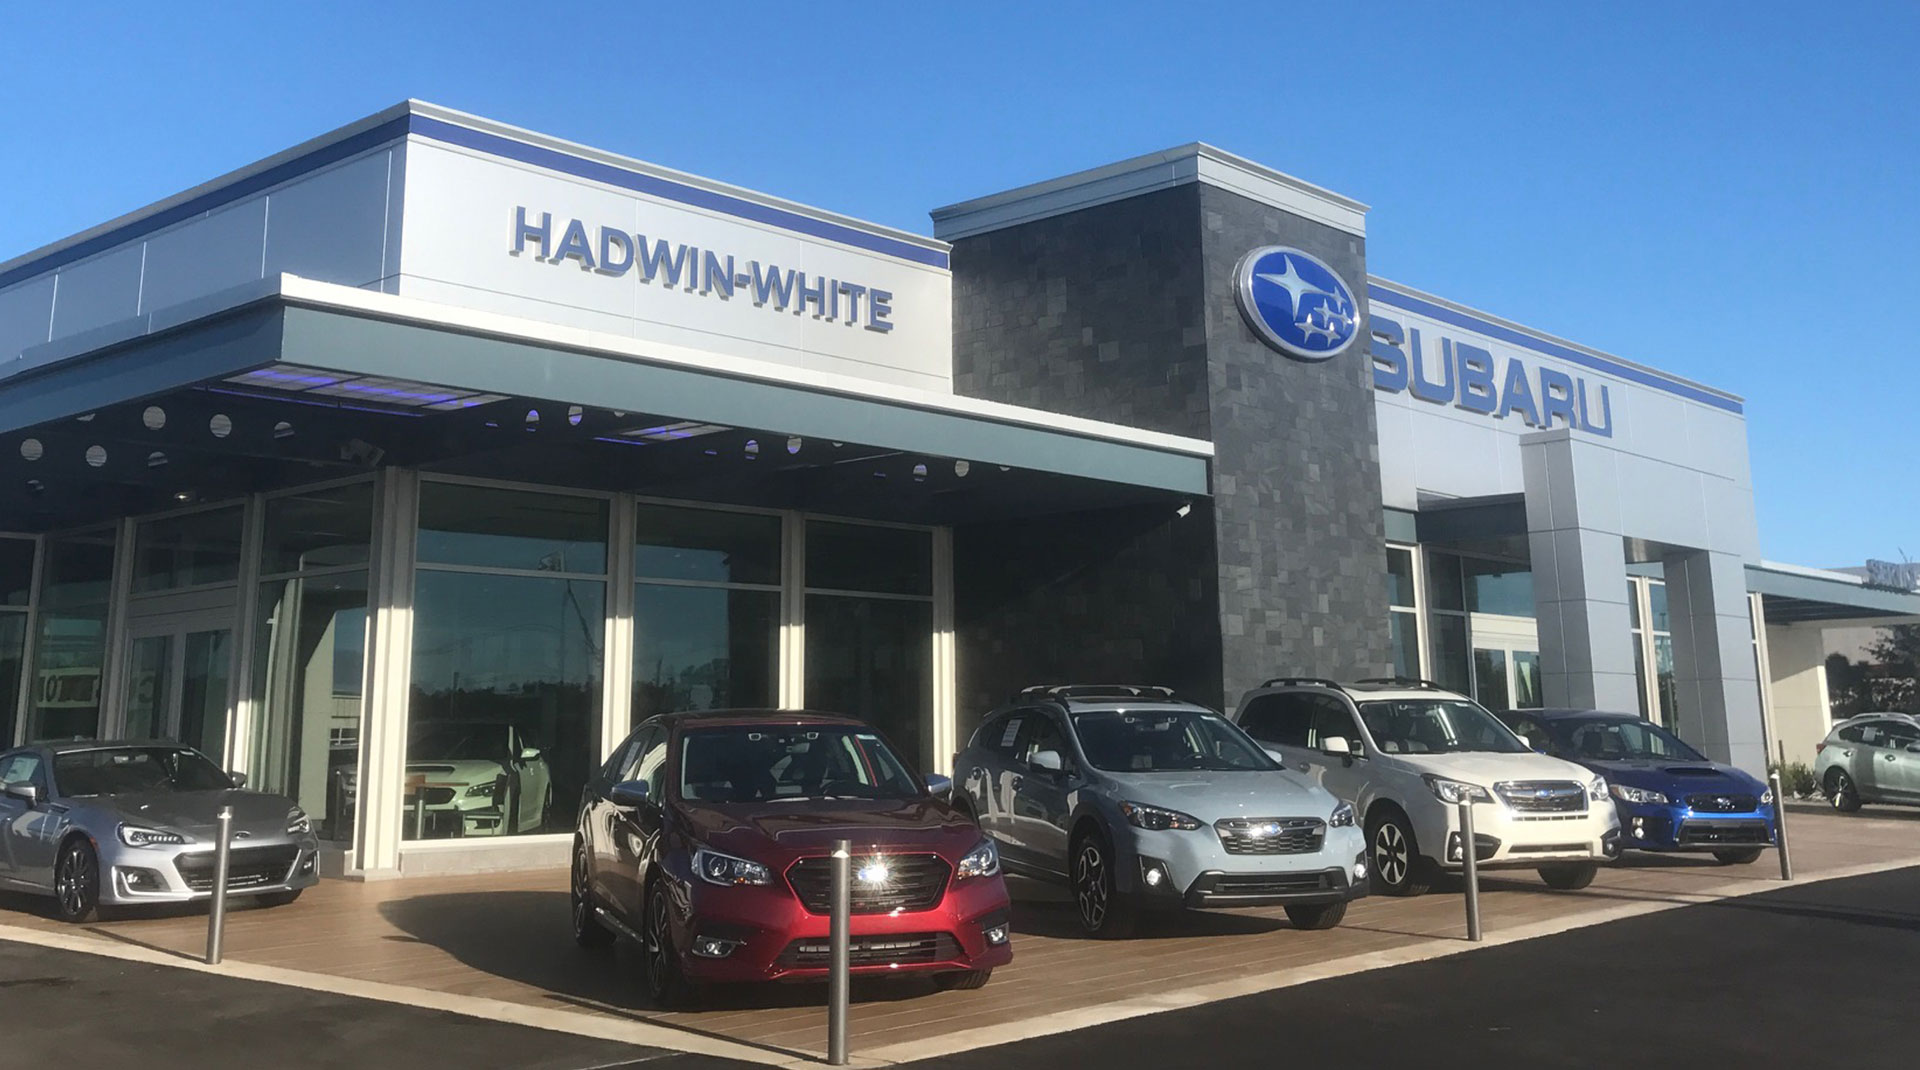 Hadwin-White Subaru